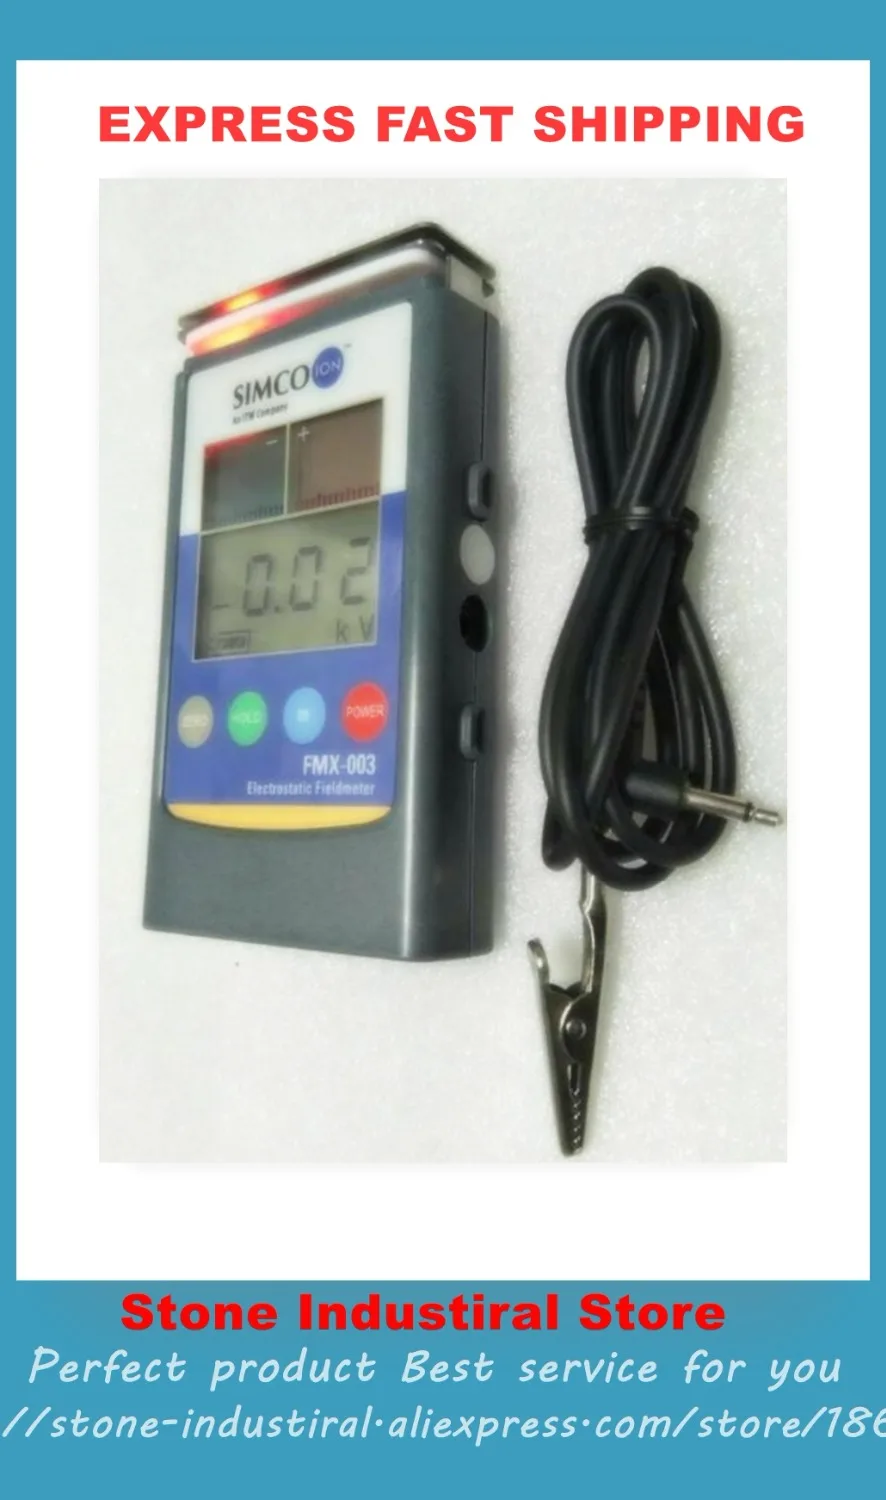 FMX-003 de prueba electrostática manual FMX 003, medidor de prueba ESD, medidor de campo electrostático